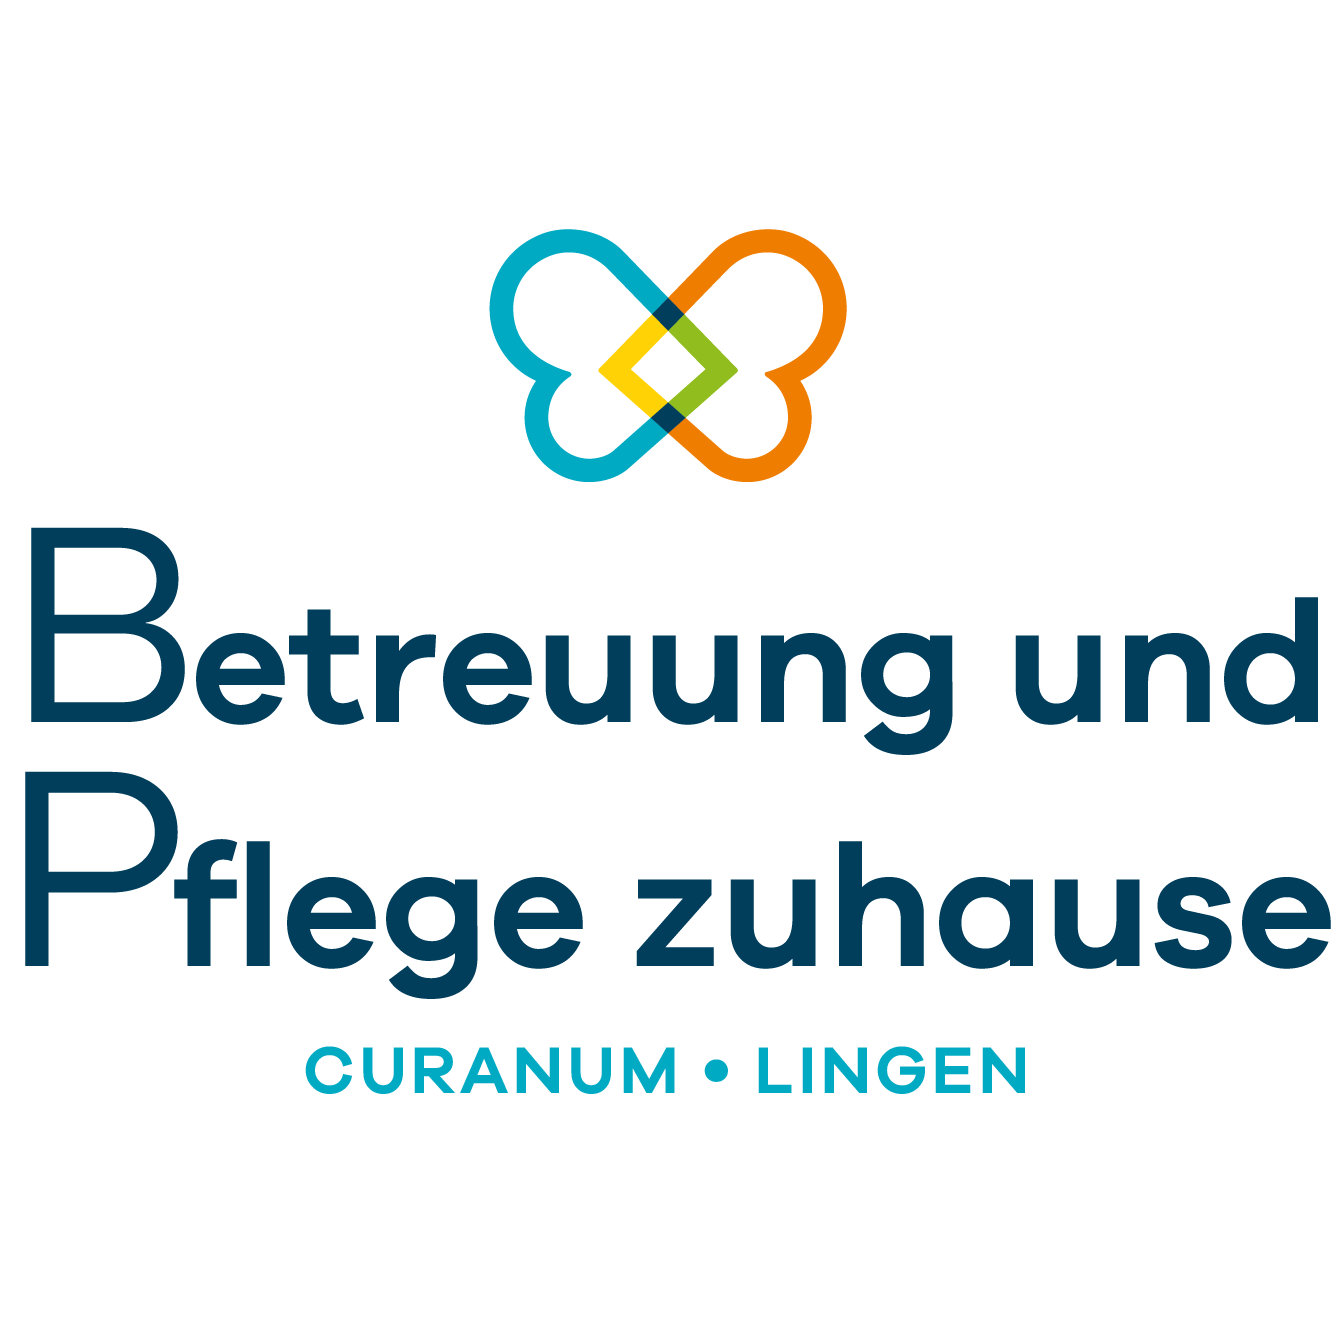 Betreuung und Pflege zuhause Curanum Lingen in Lingen an der Ems - Logo